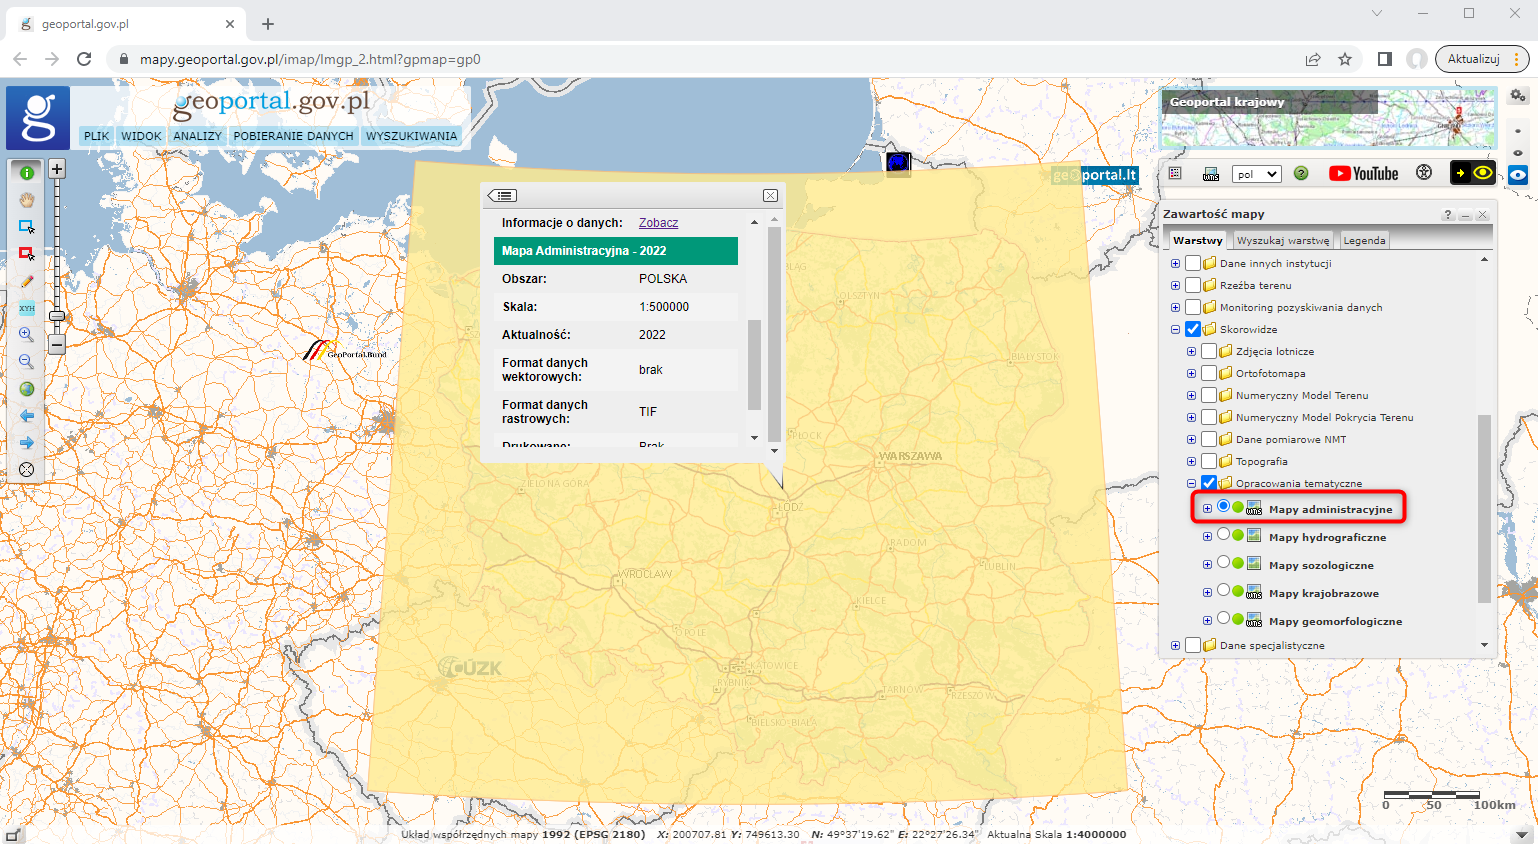 Ilustracja przedstawia zrzut ekranu z serwisu www.geoportal.gov.pl ze skorowidzem map administracyjnych